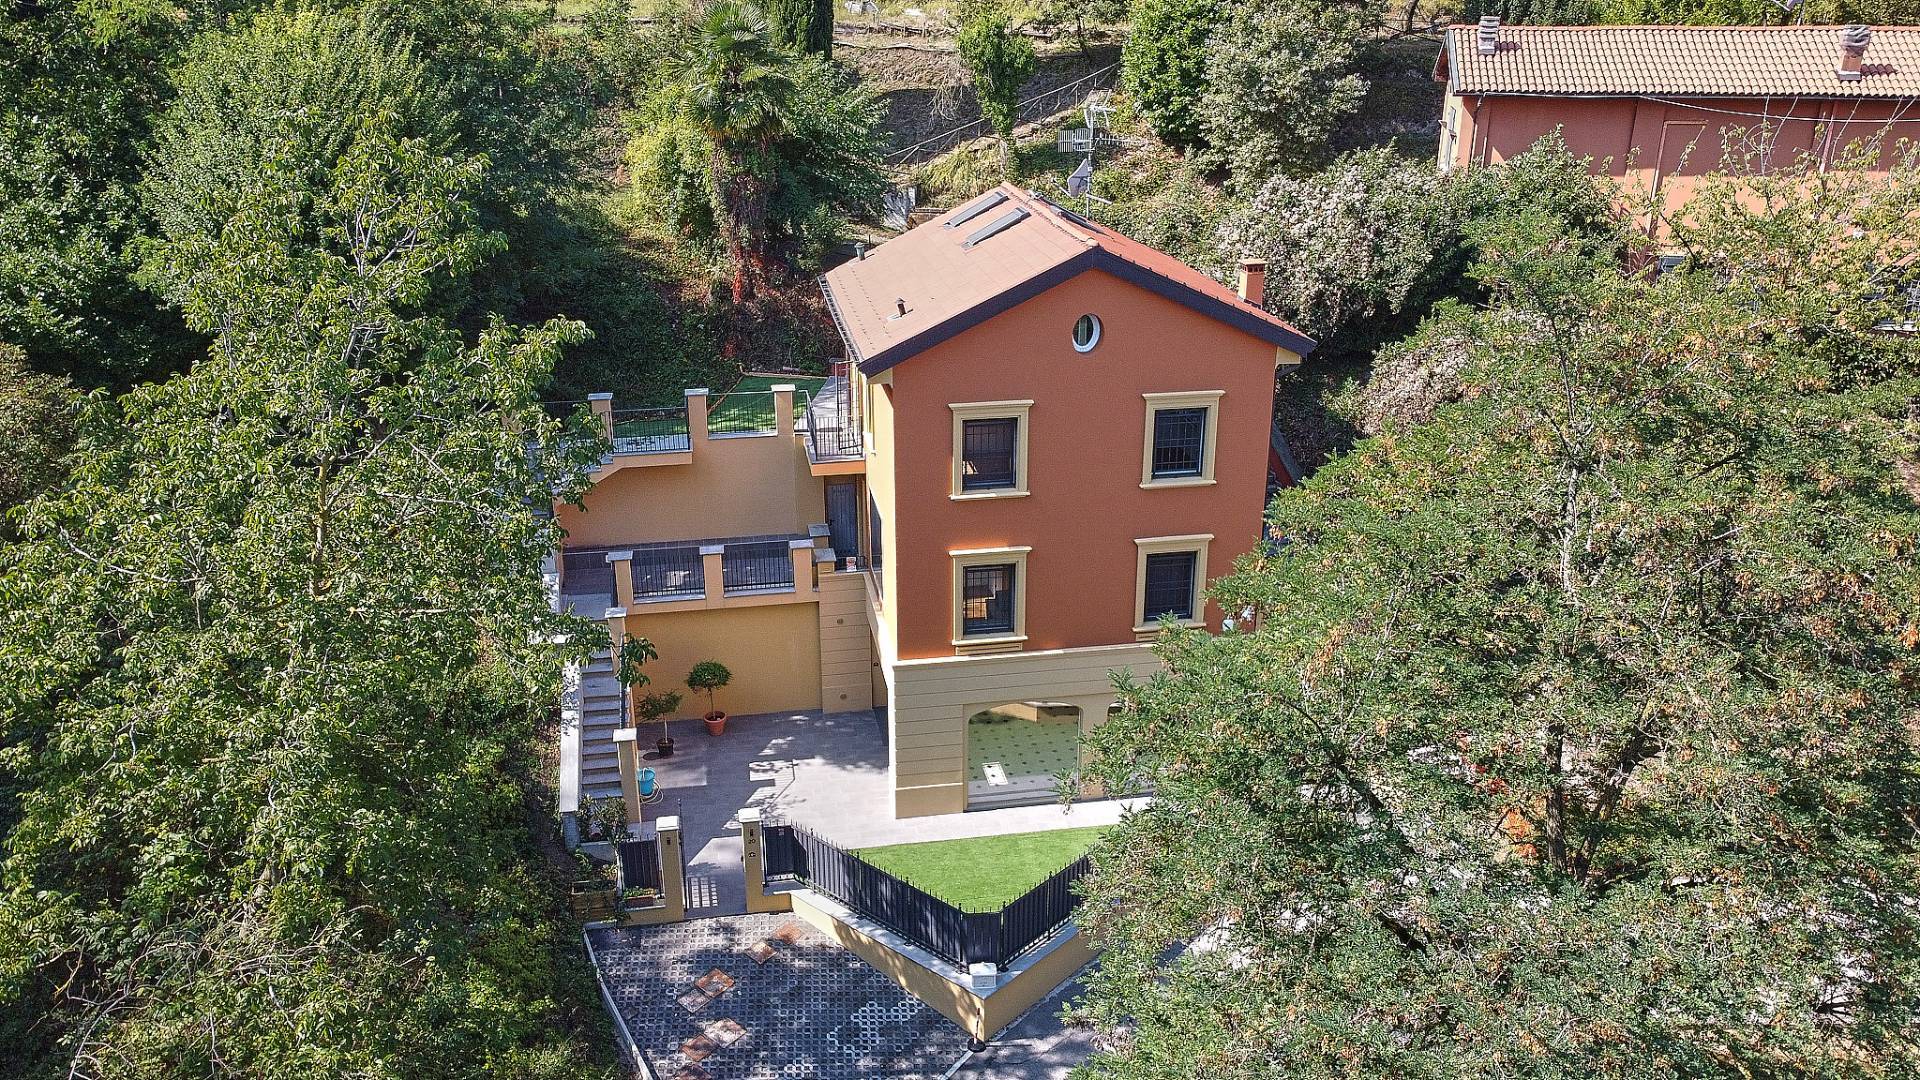 Villa in Vendita a Casalecchio Di Reno: 5 locali, 300 mq - Foto 2